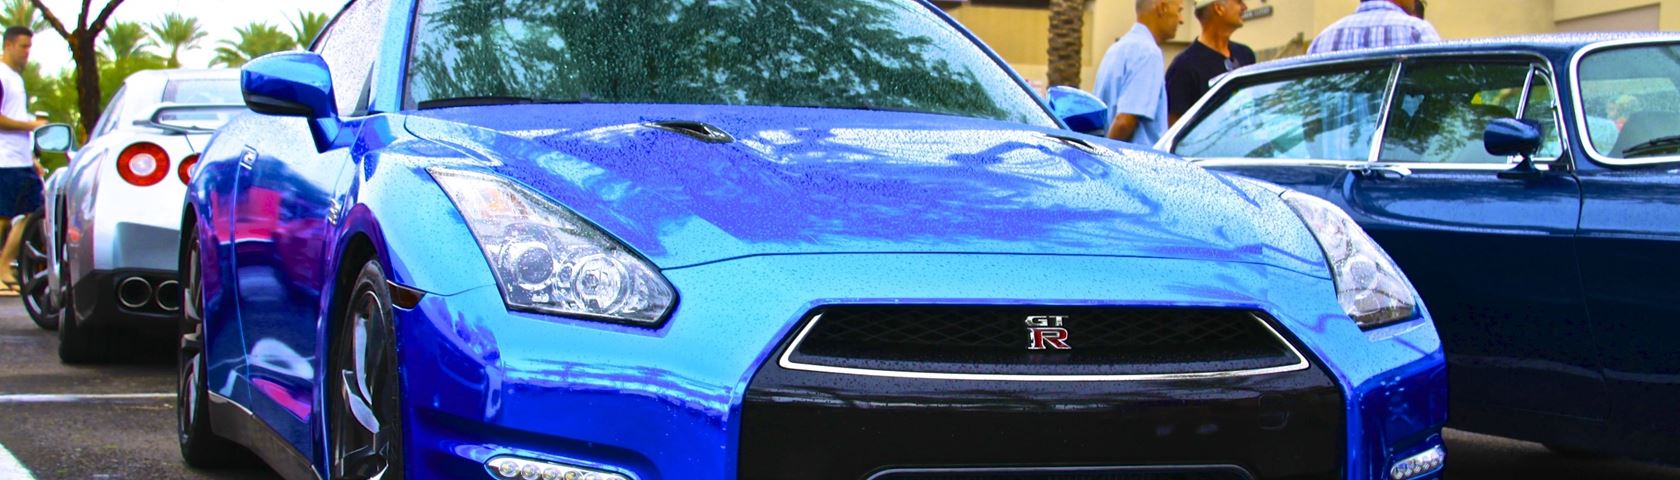 Chrome Blue Nissan GTR